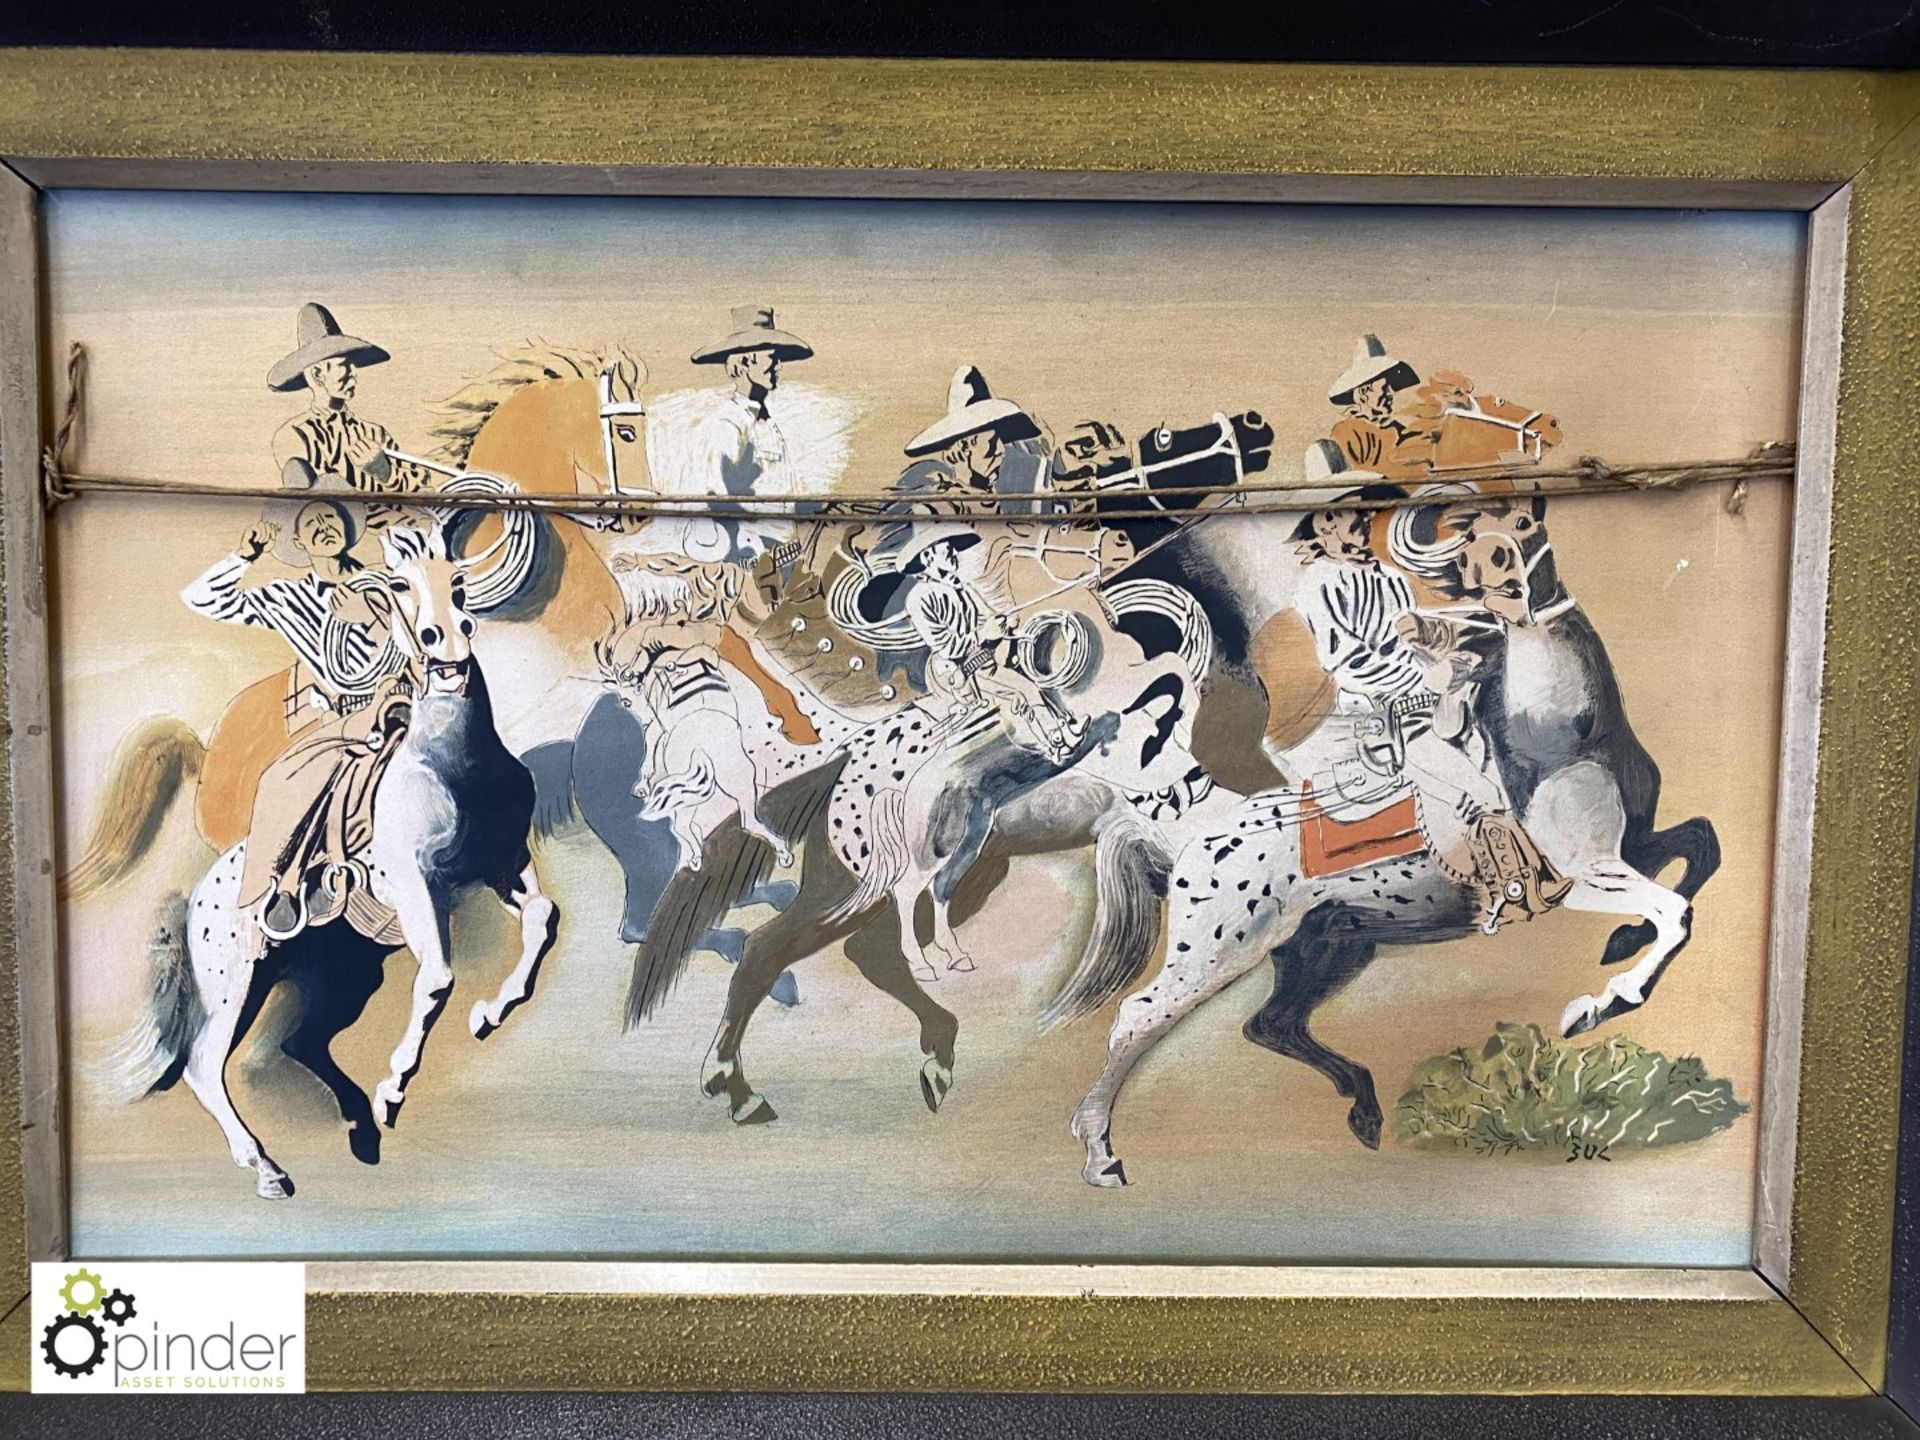 Framed Print on Board “Arizona Cowboys” by B Ulreich, 820mm x 560mm - Image 2 of 3